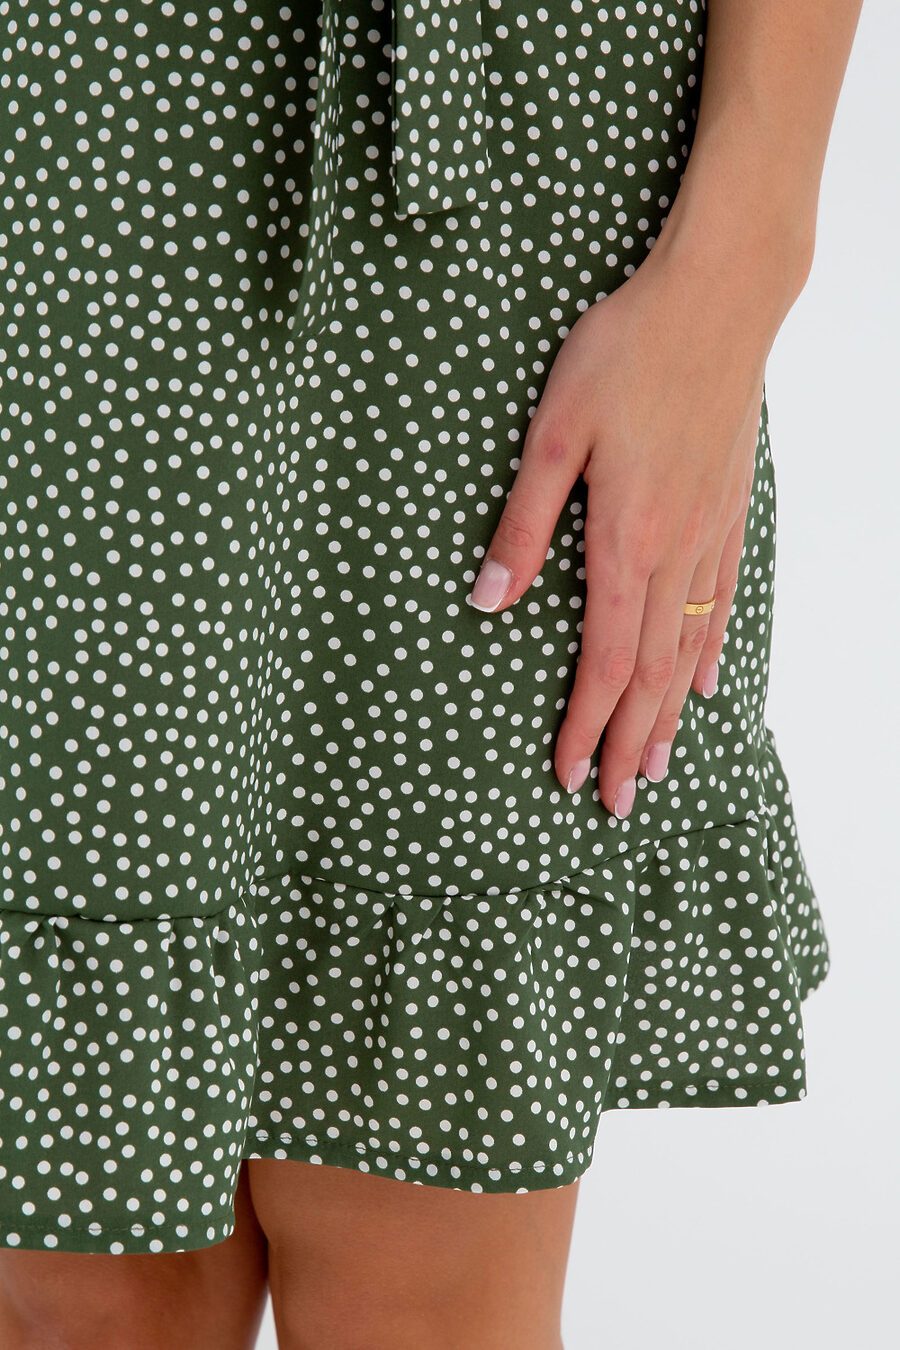 Платье П-20 для женщин НАТАЛИ 775899 купить оптом от производителя. Совместная покупка женской одежды в OptMoyo